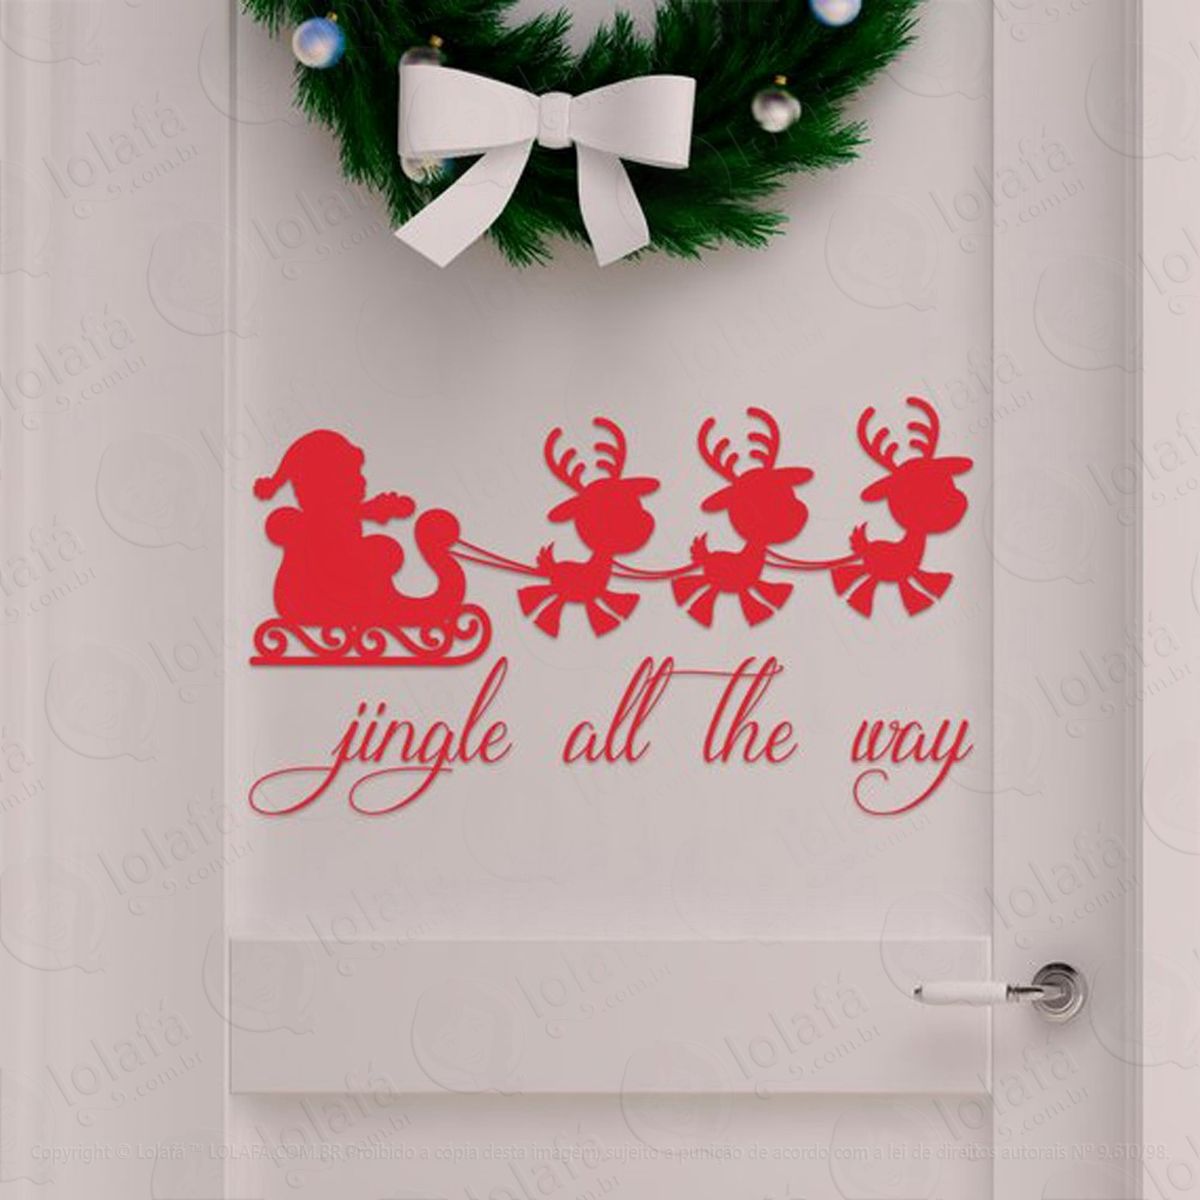 noel com renas adesivo de natal para vitrine, parede, porta de vidro - decoração natalina mod:179